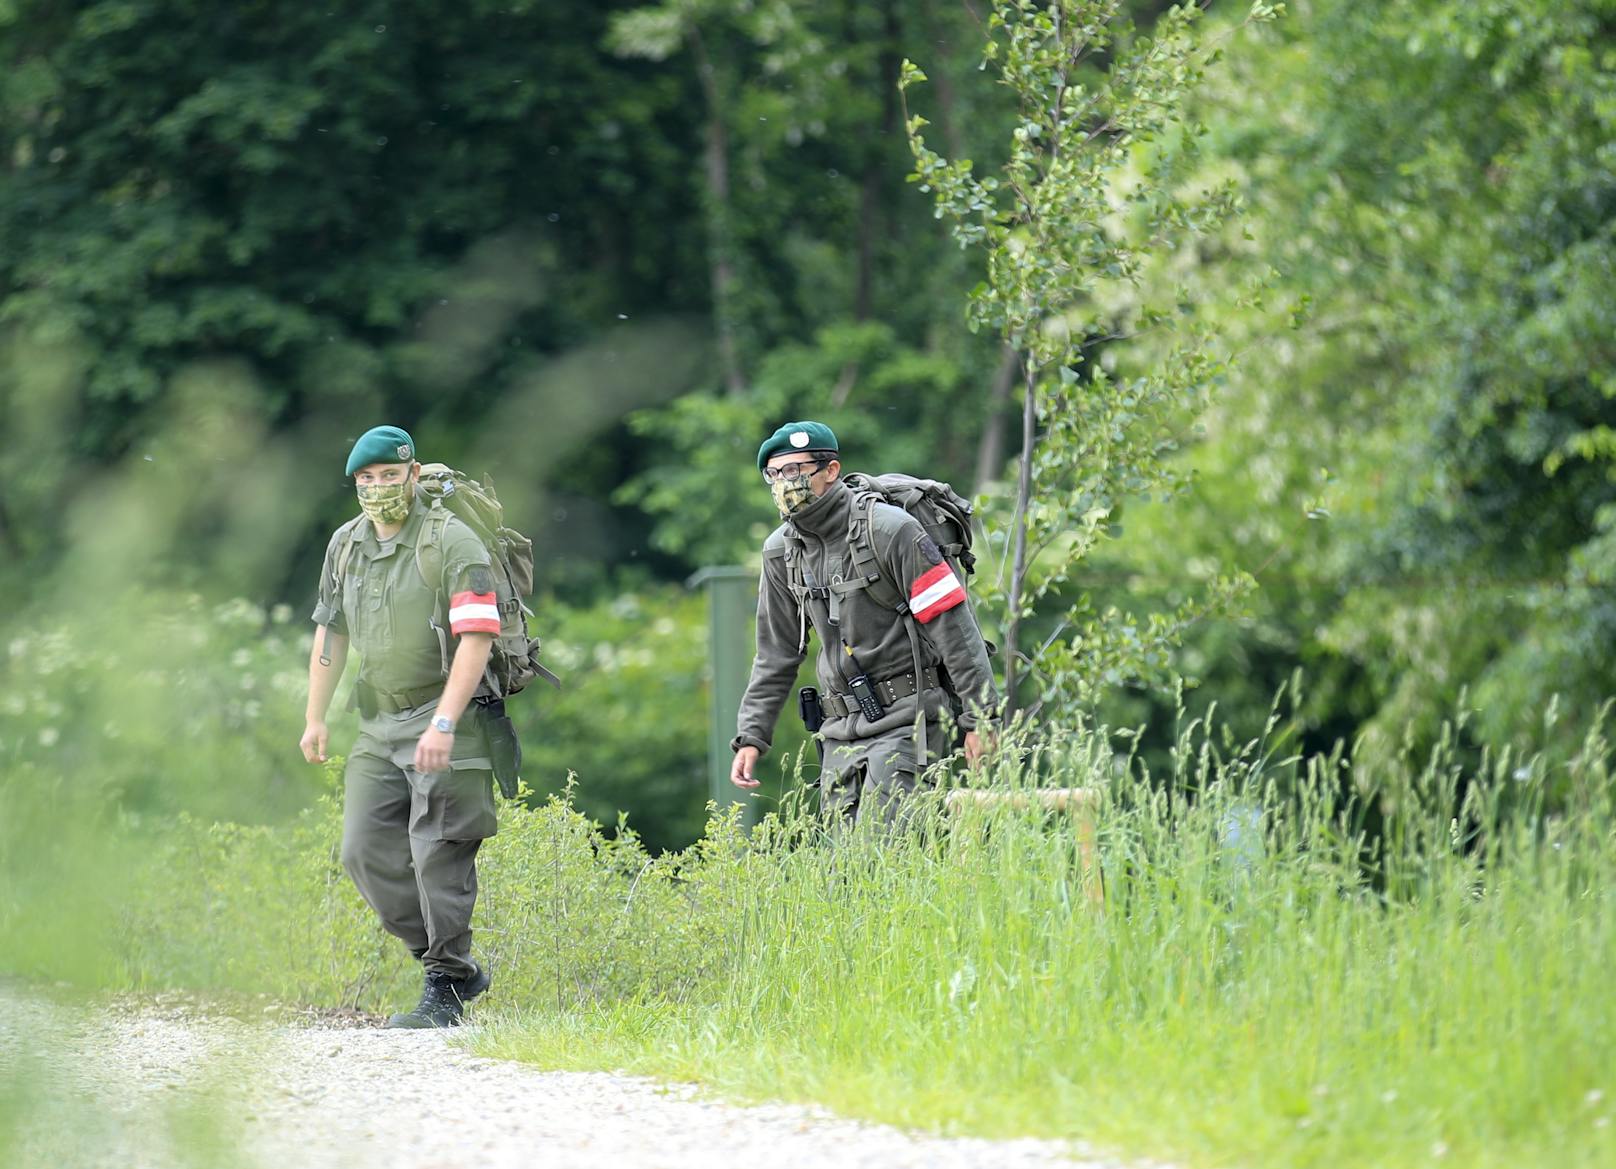 Milizsoldaten an der Grenze in Bad Radkersburg am 20. Mai 2020 